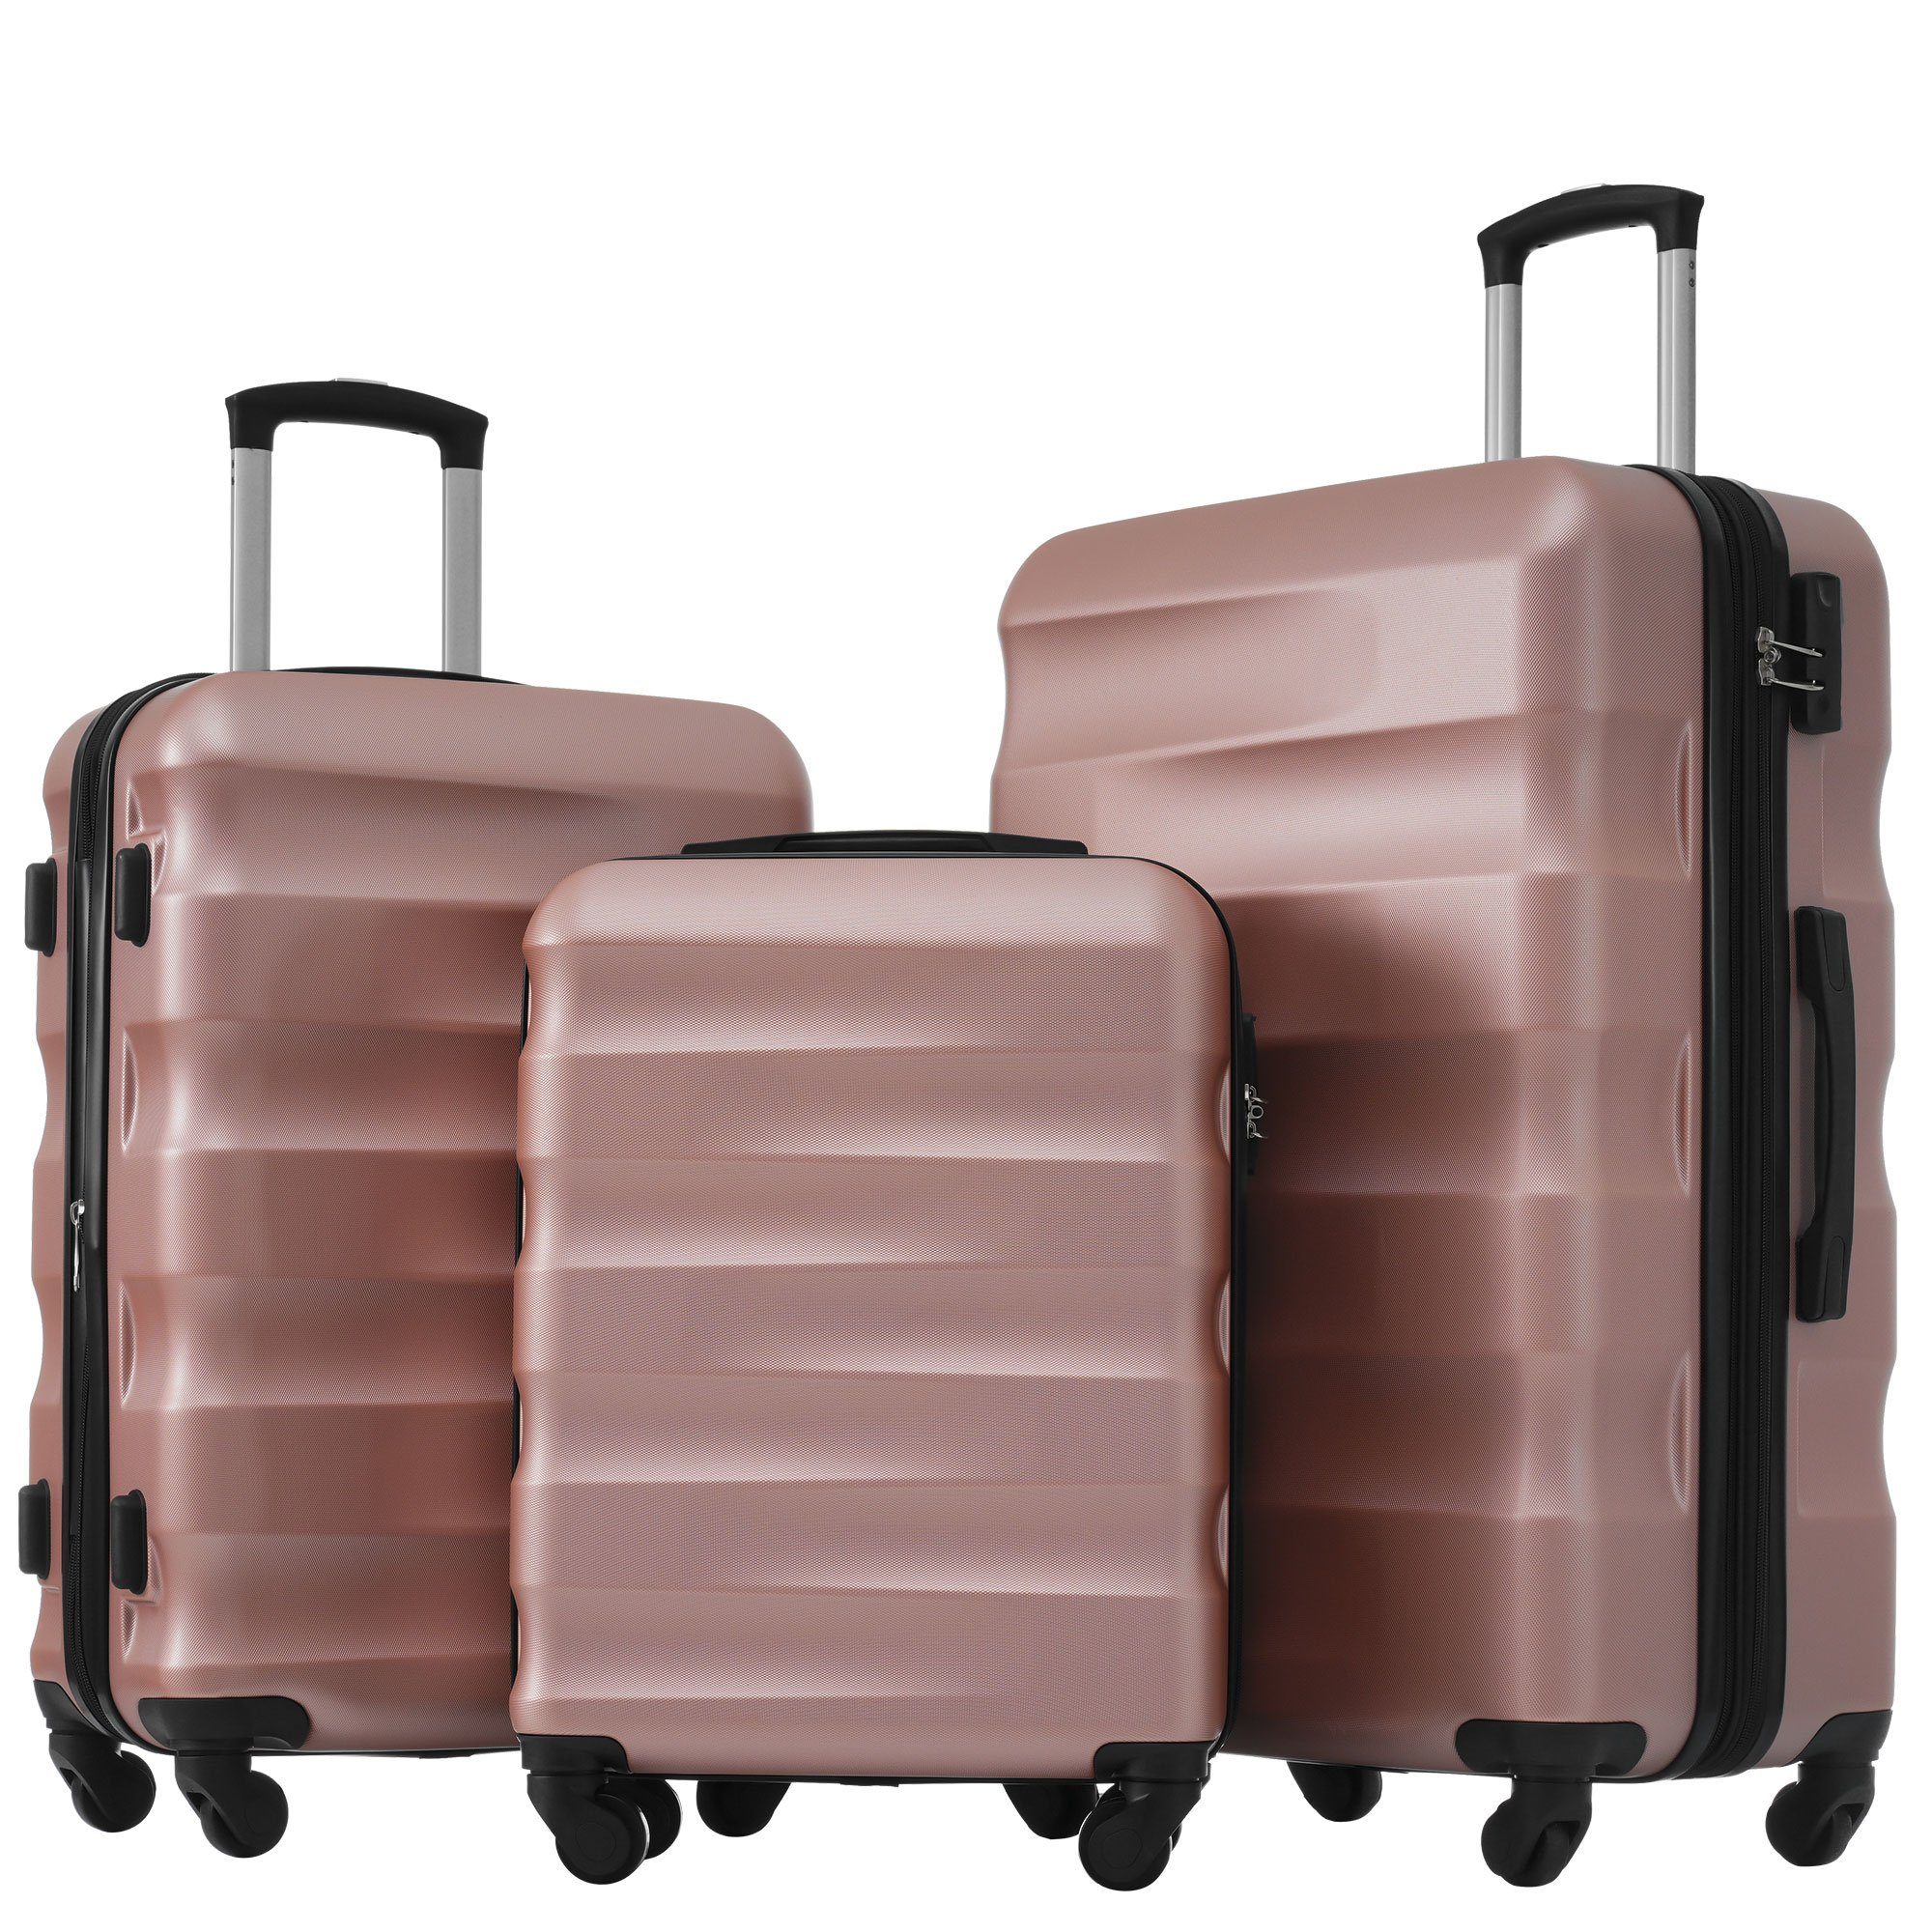 Ulife Trolleyset Kofferset Reisekoffer ABS-Material, TSA Zollschloss, 360° -Räder, 4 Rollen, (3 tlg) Rosa